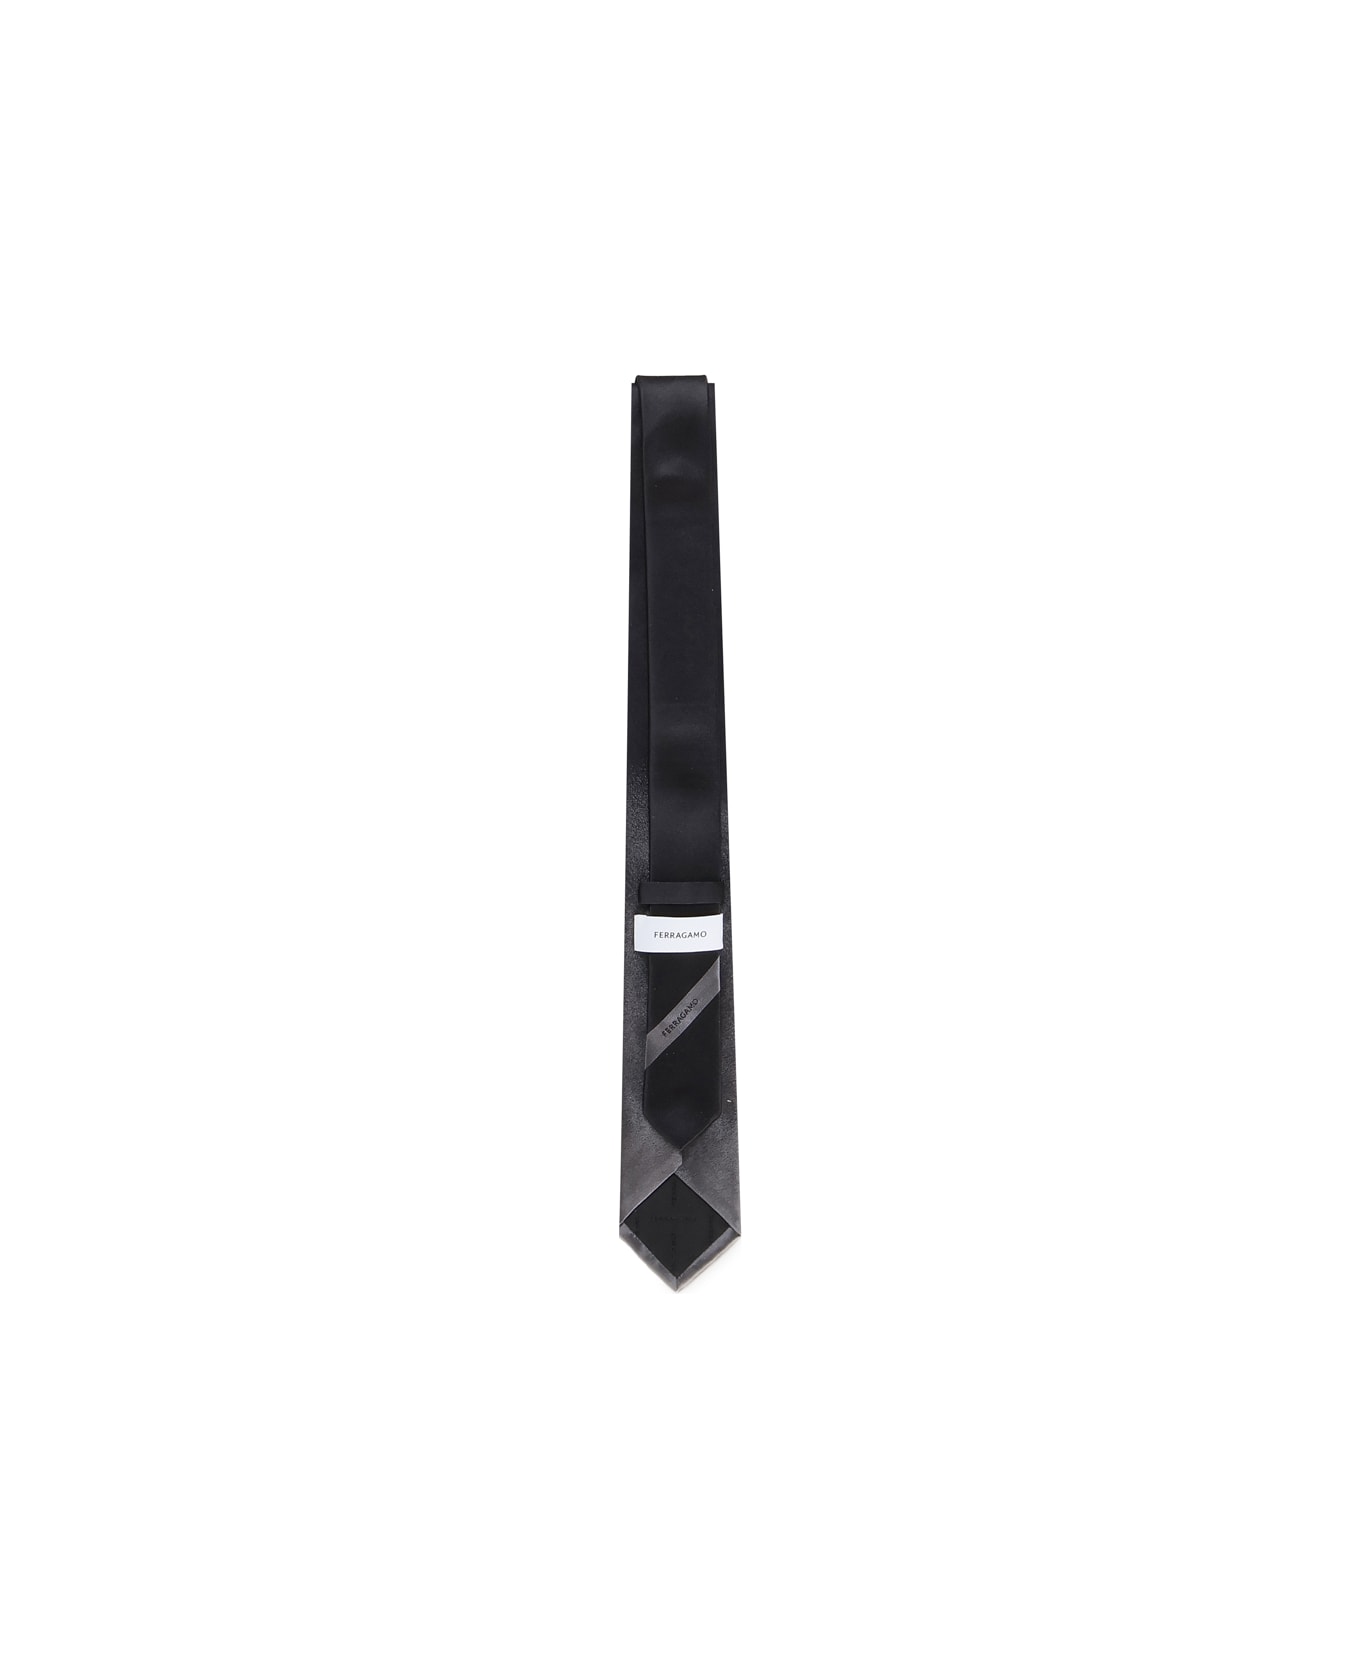 Ferragamo Tie With Shaded Effect - Black, grey ネクタイ